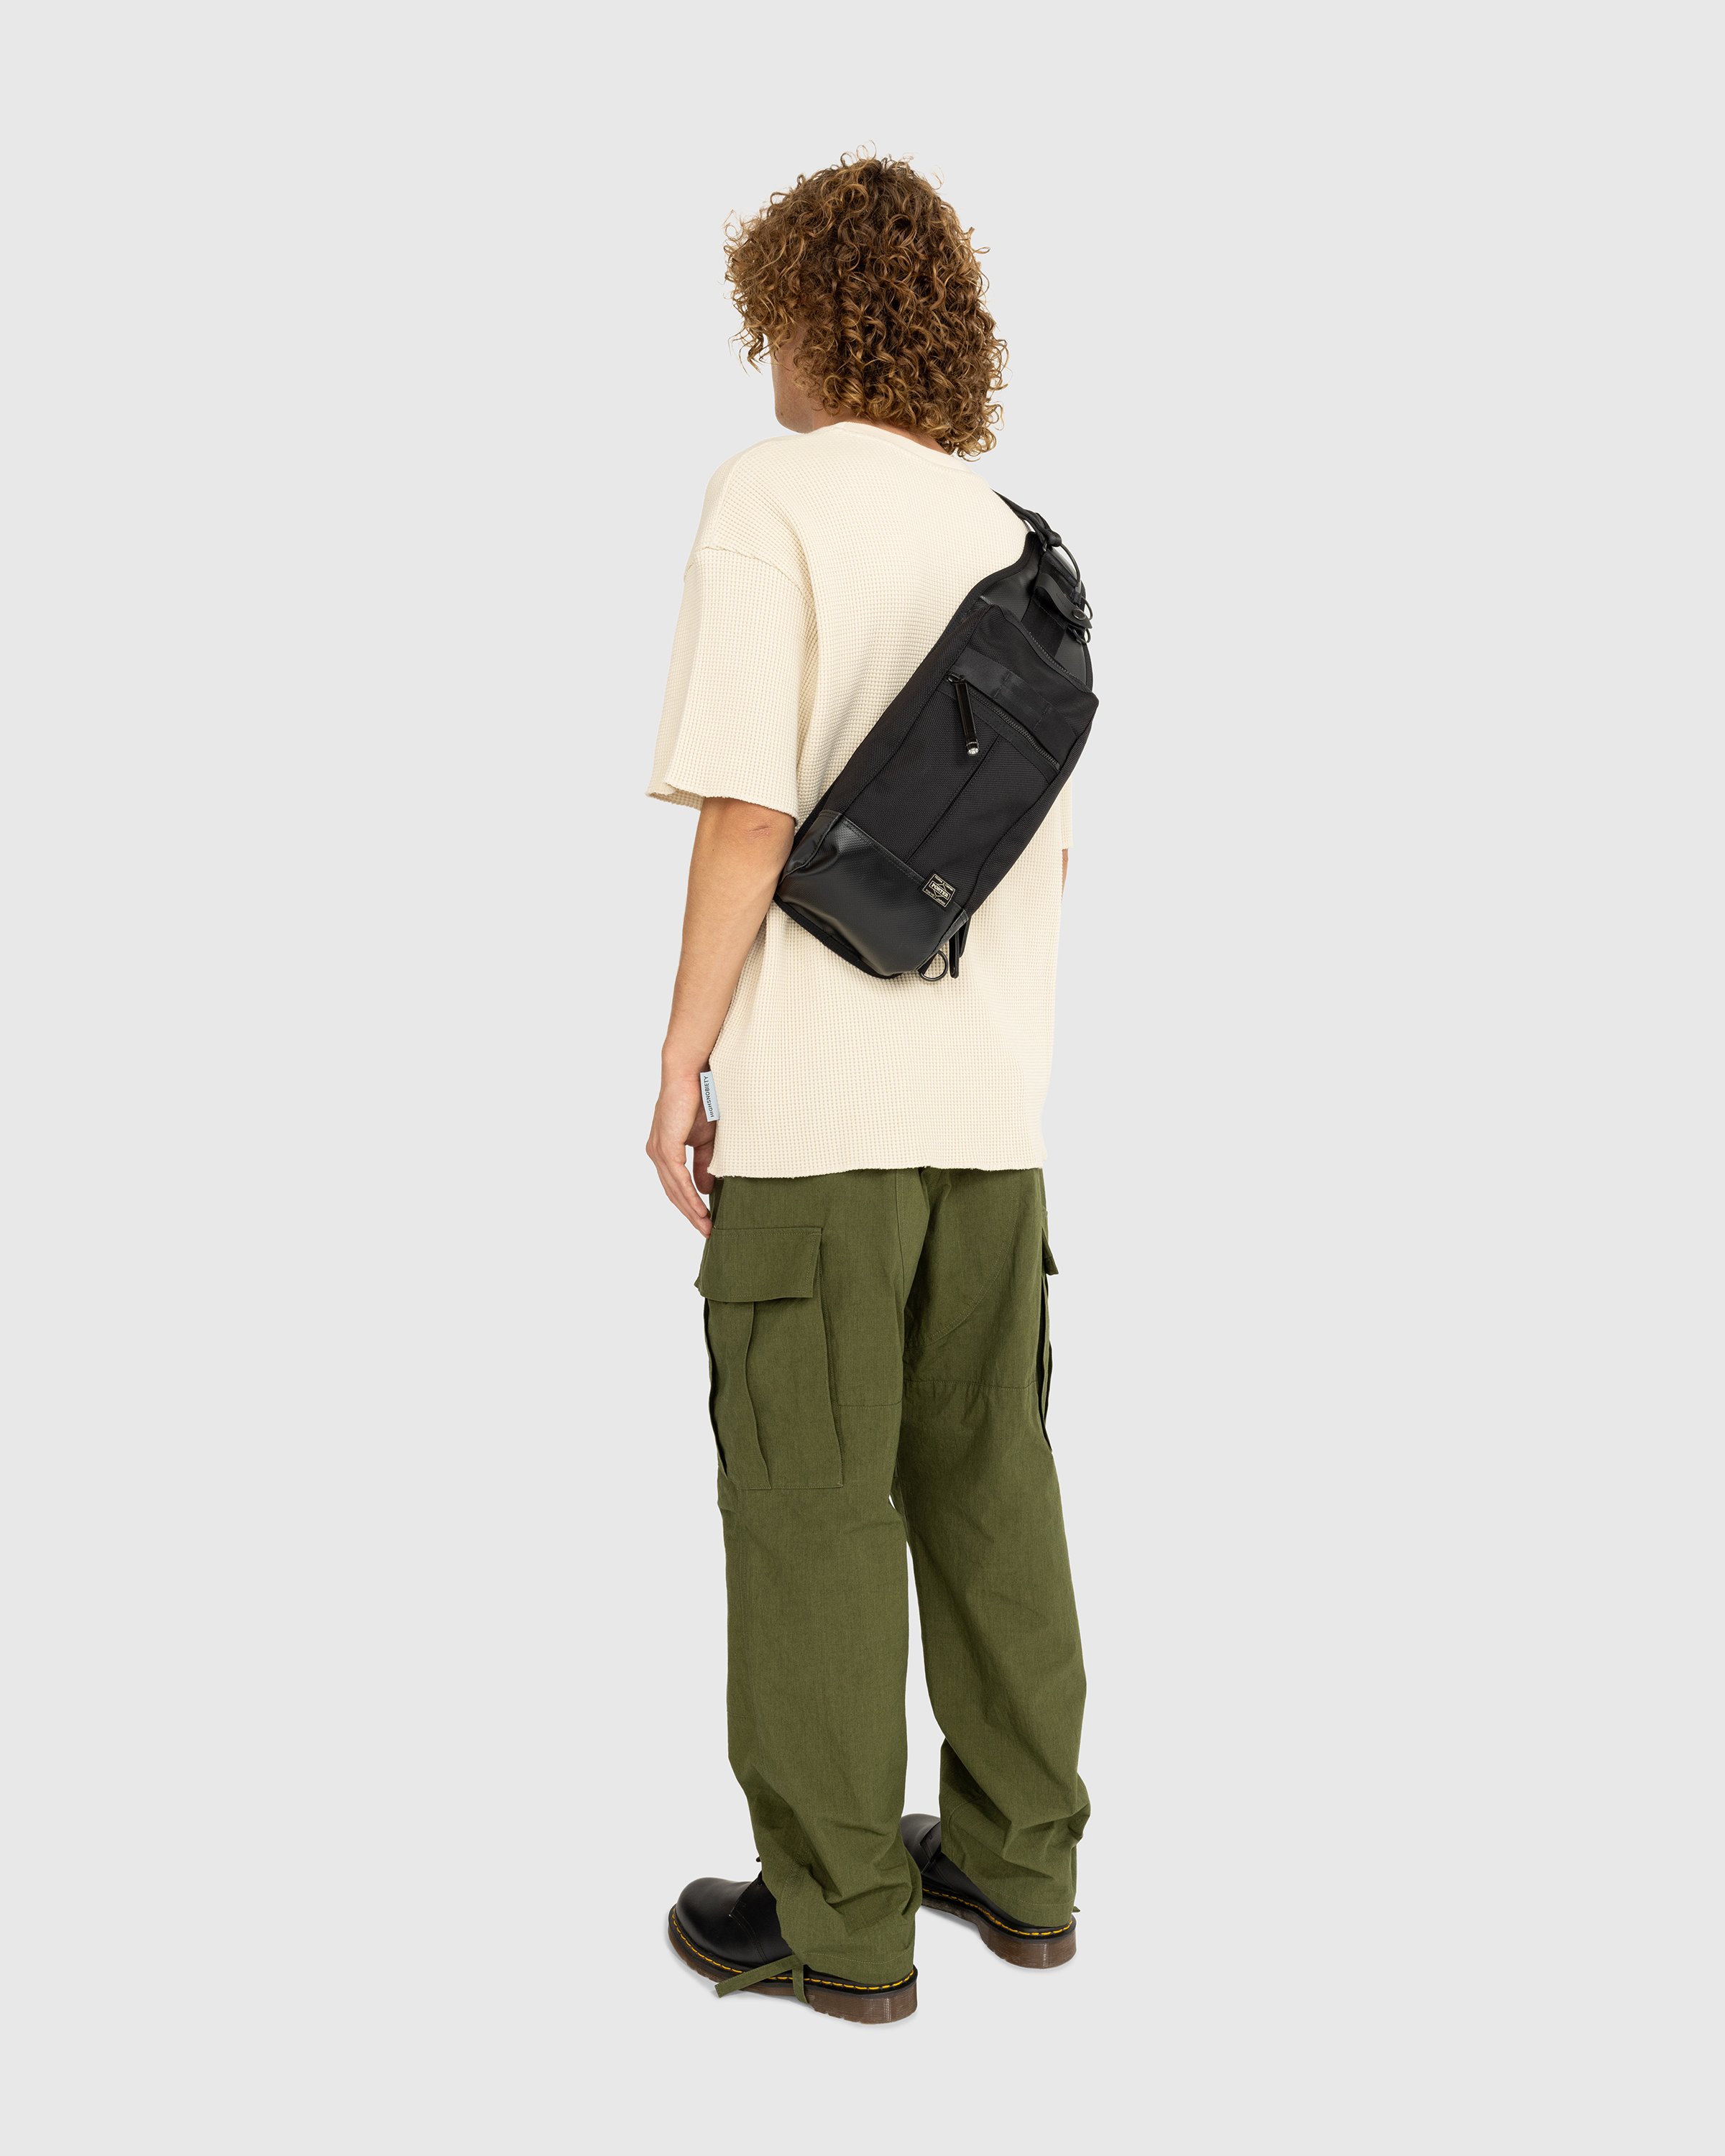 Porter-Yoshida & Co. - Heat Sling Shoulder Bag Black - Accessories - Black - Image 4